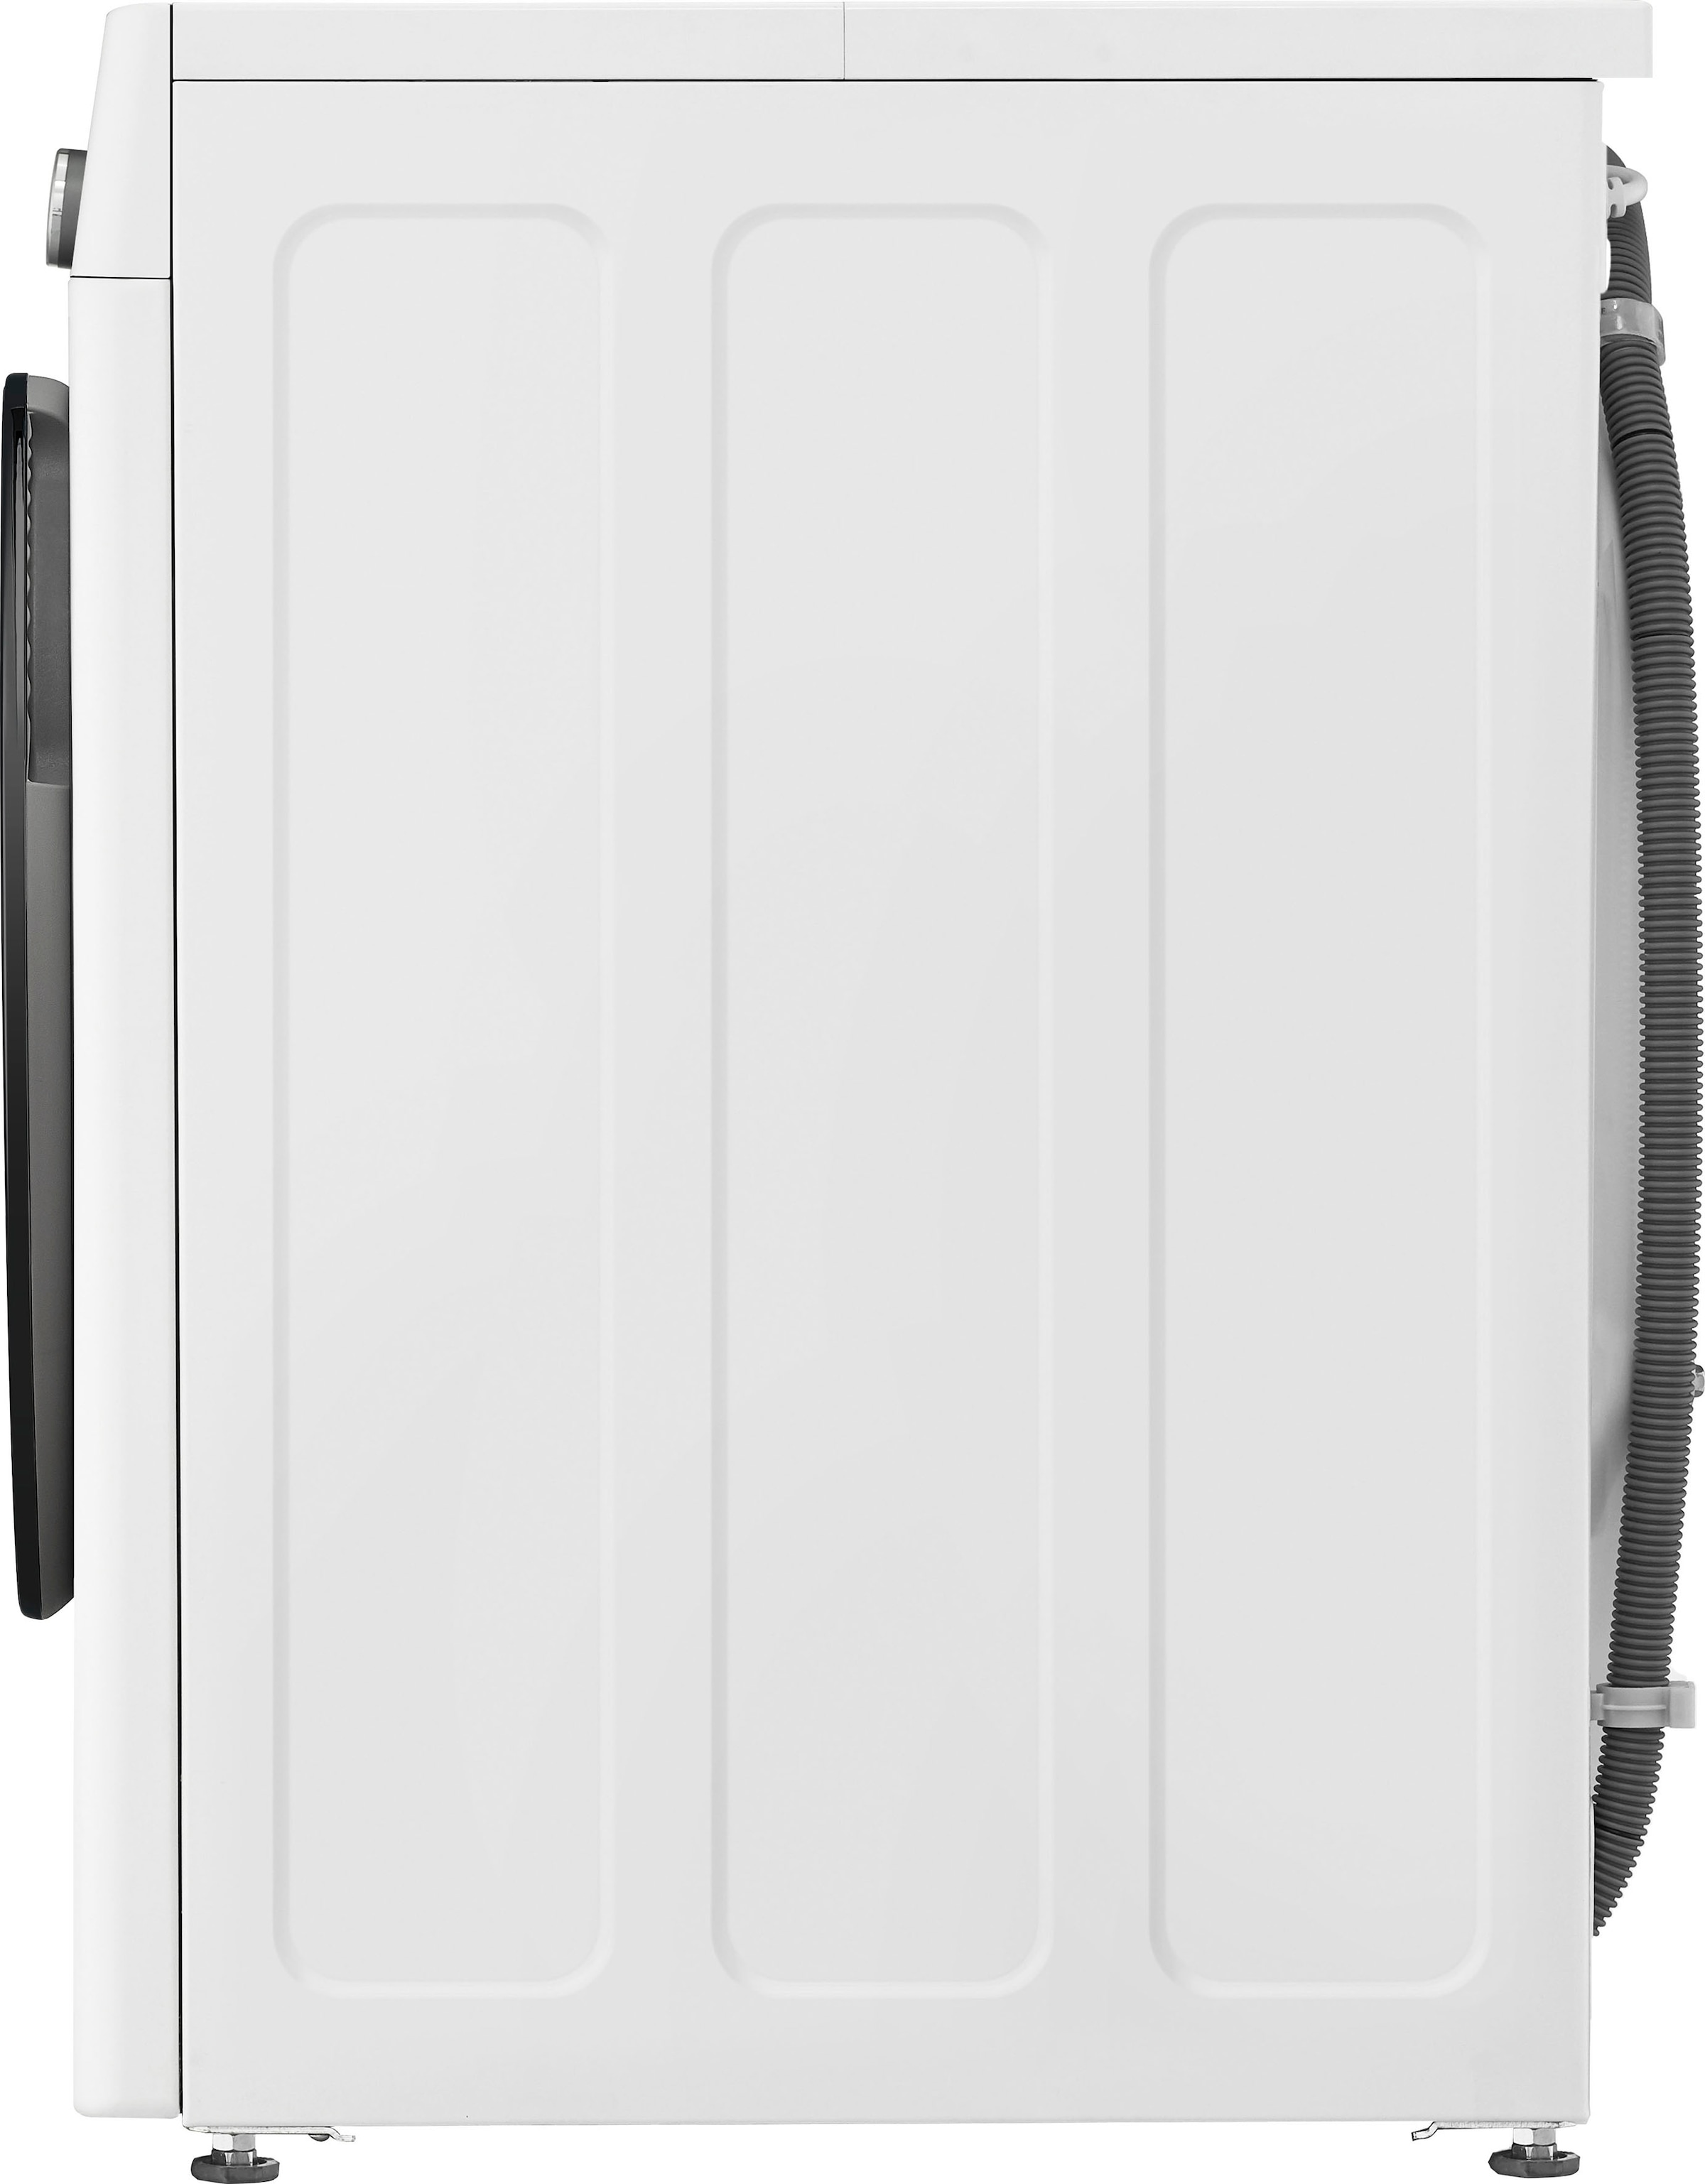 LG Waschmaschine »F4WR7031«, Serie mit Jahren XXL kg, 13 U/min 7, 3 F4WR7031, Garantie 1400